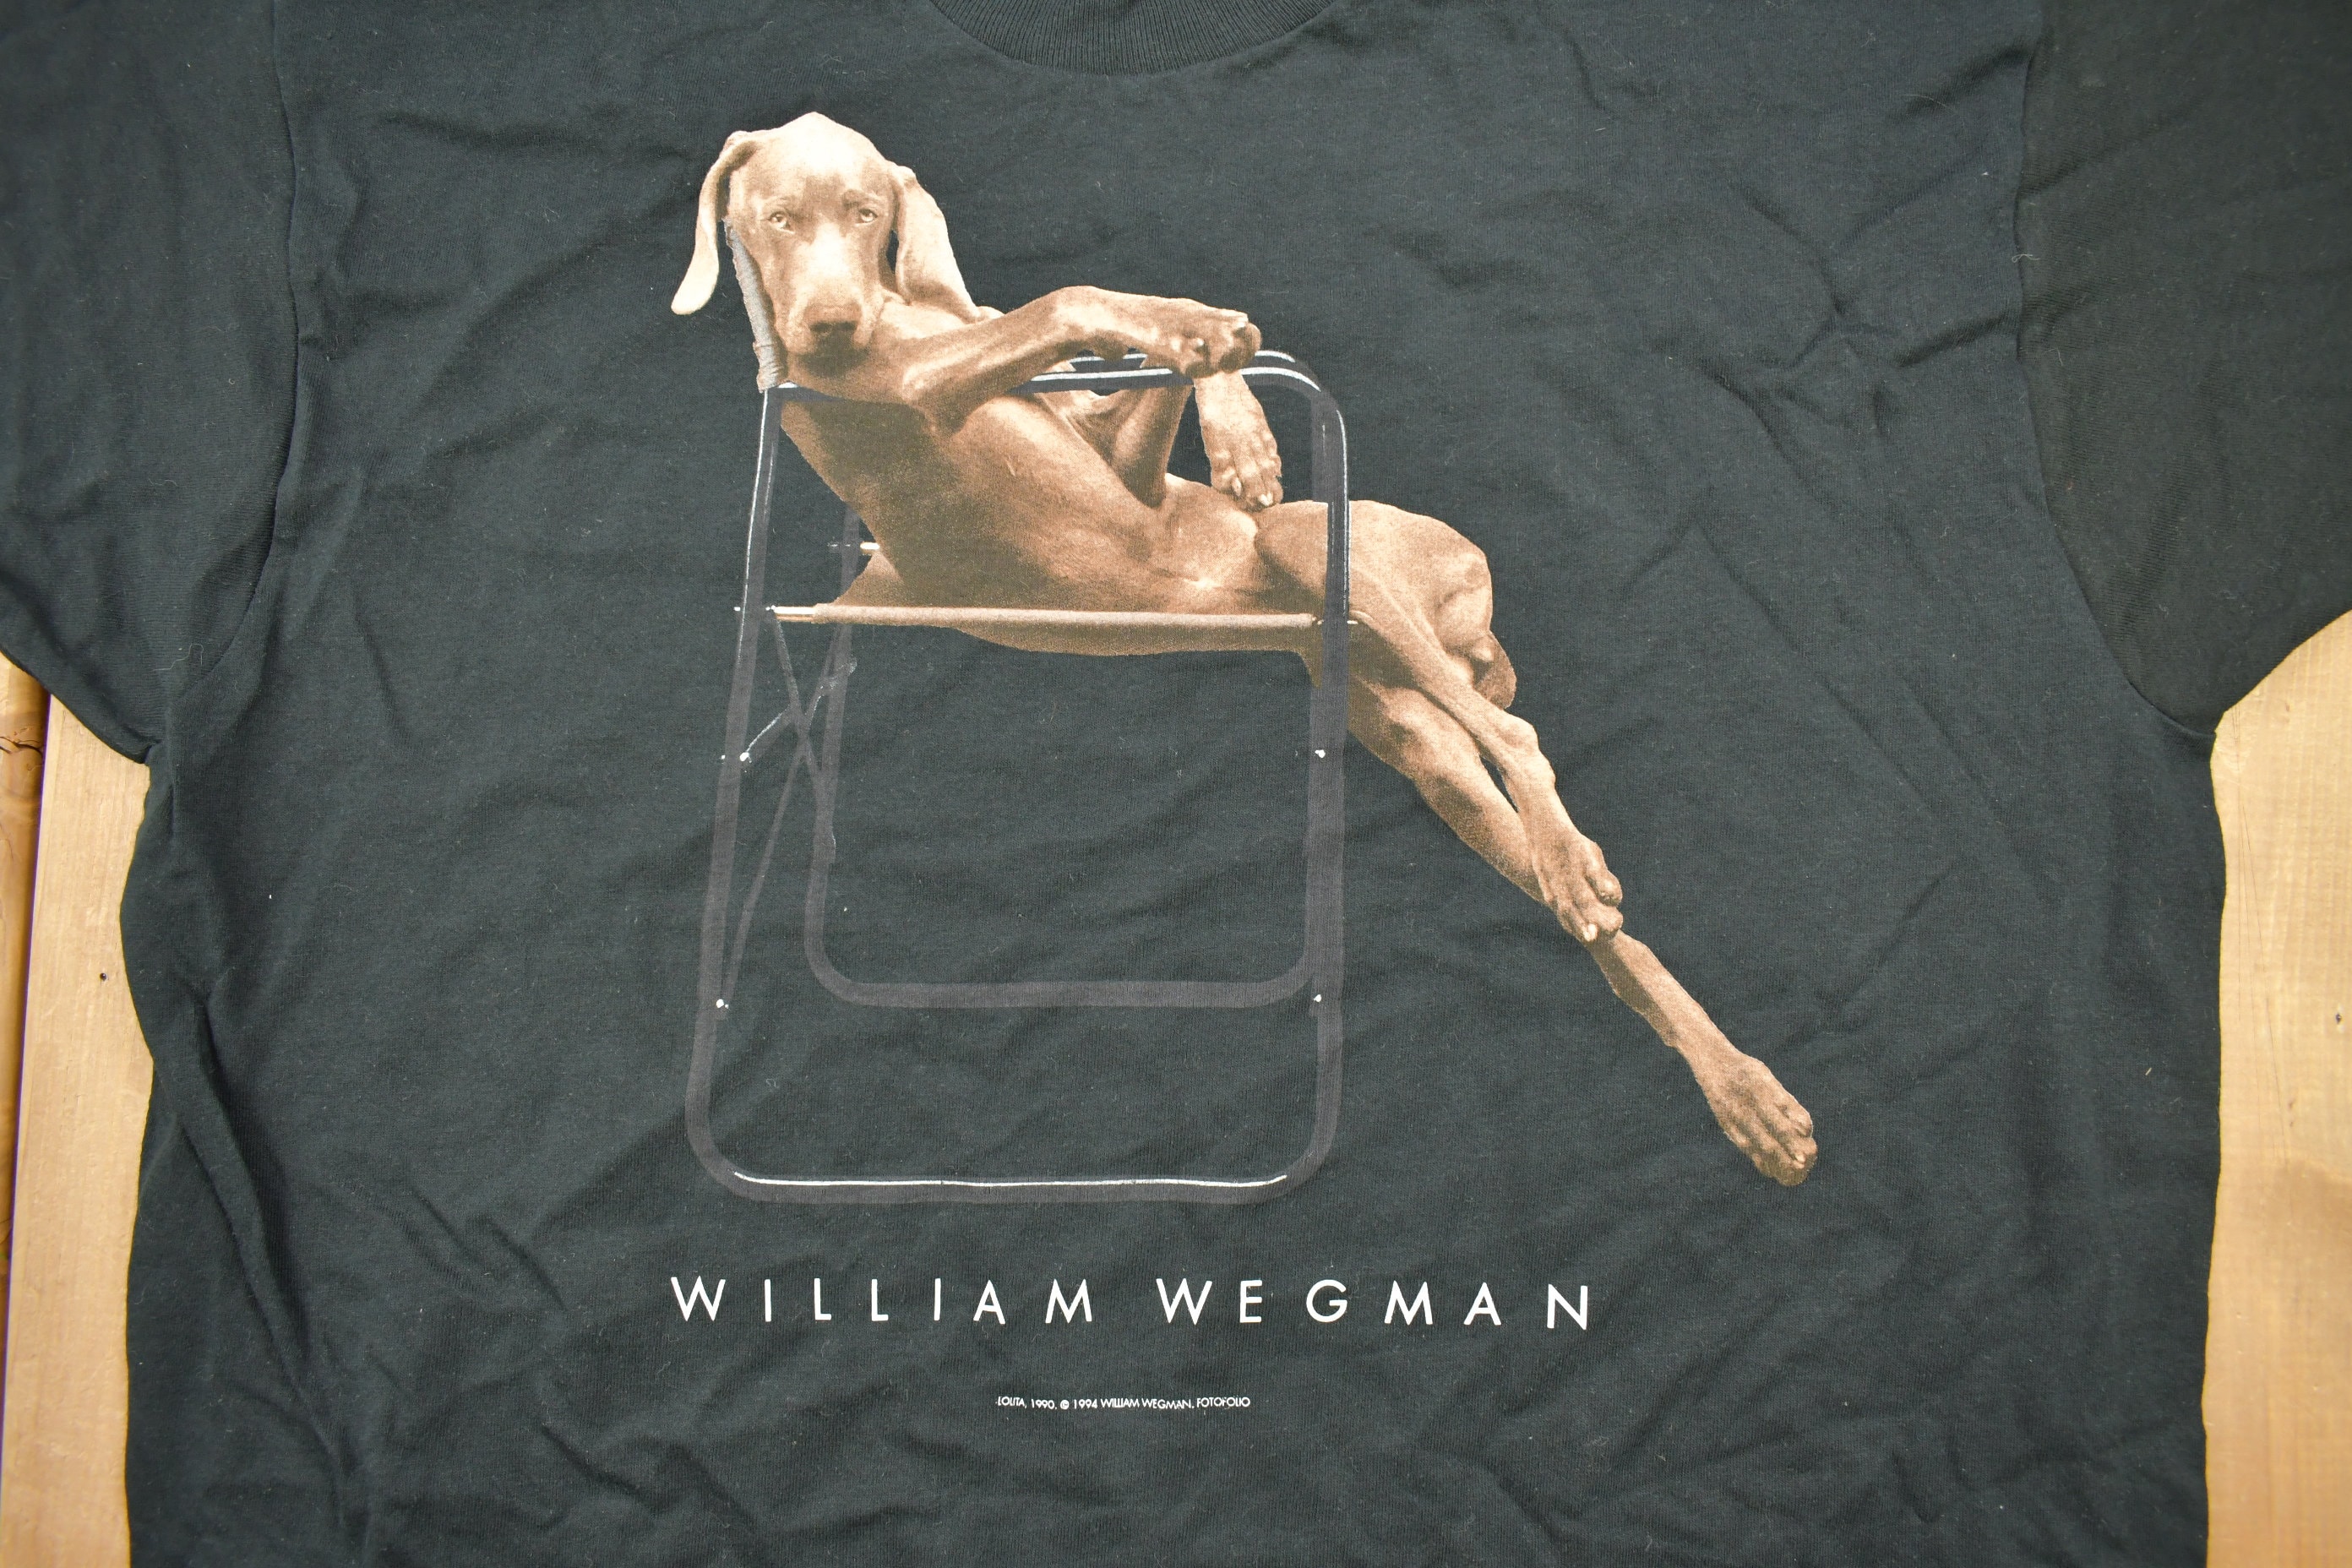 チャンピオン コレクター必見 90s Wegman William T-shirt William